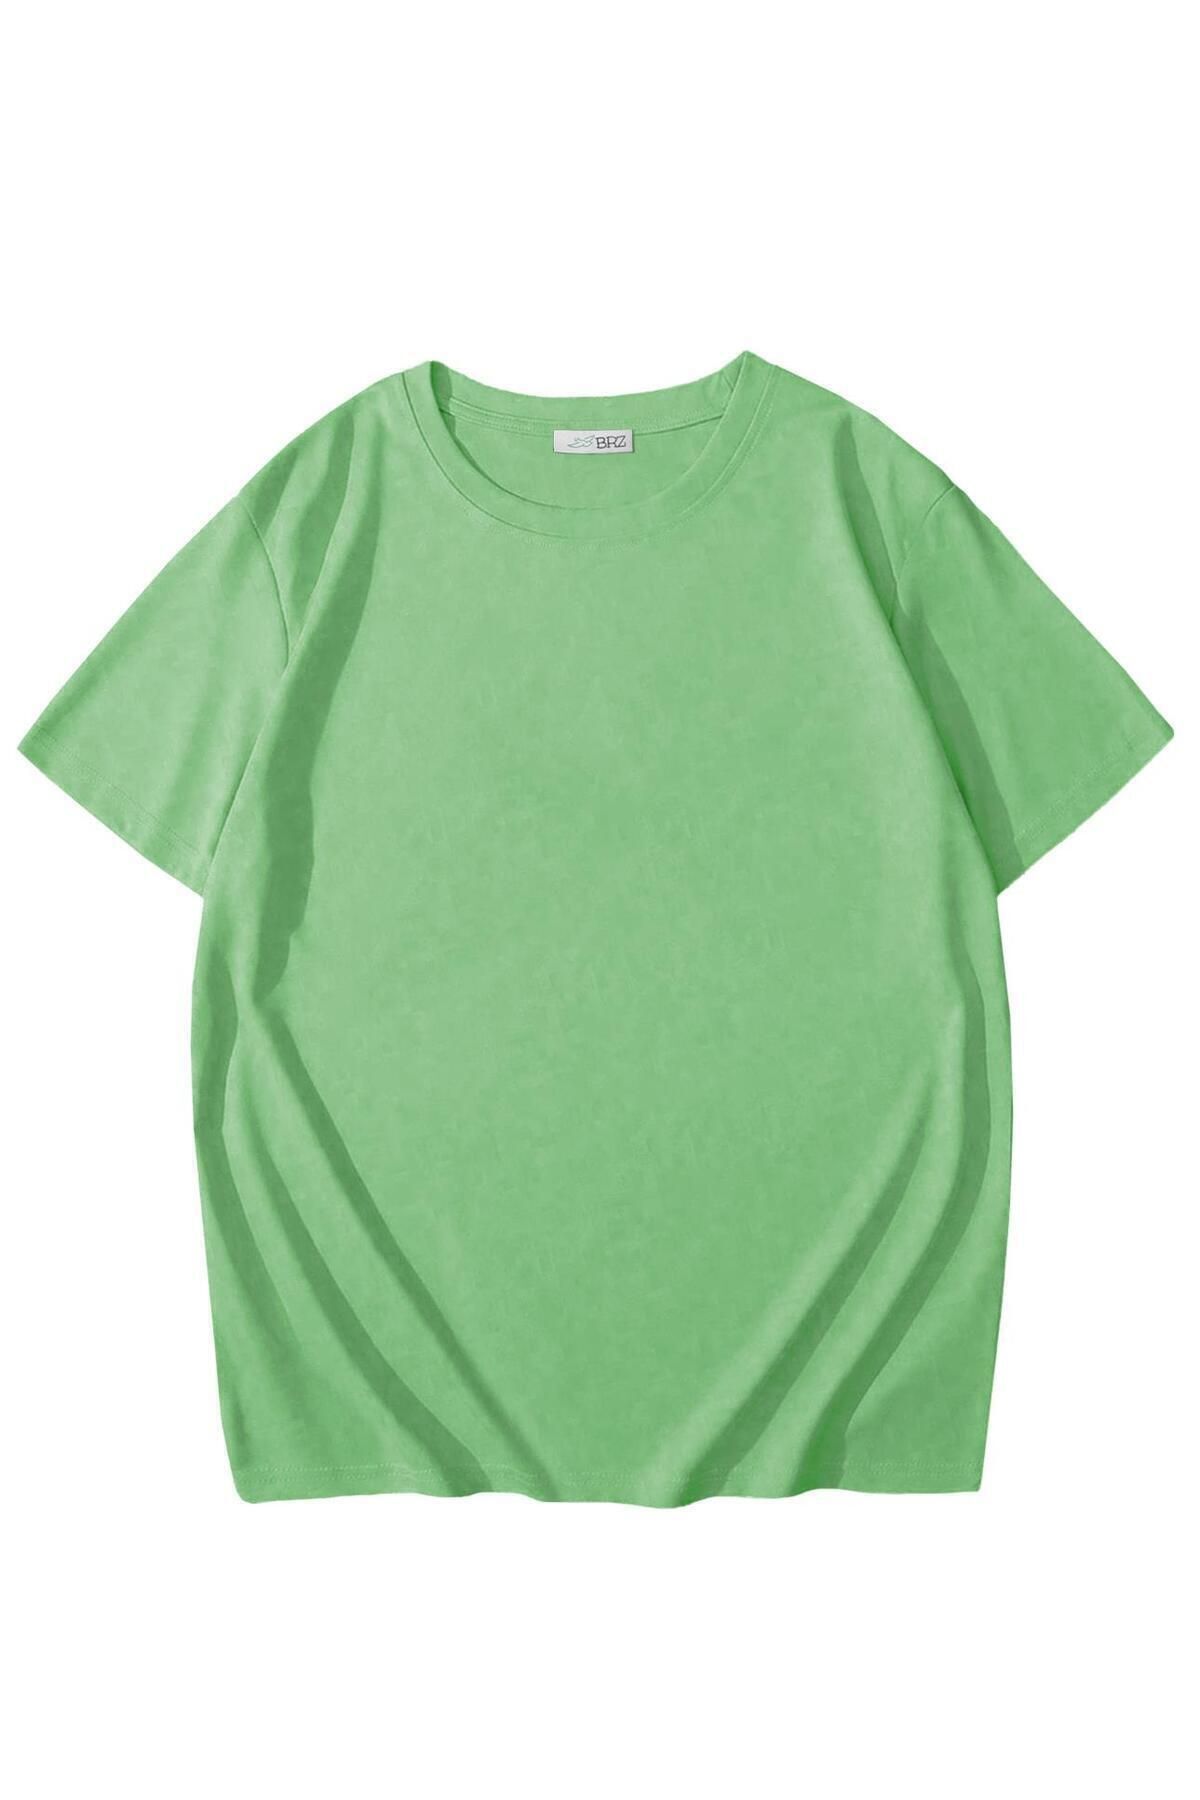 BRZ KIDS Unisex Çocuk Basic T-shirt Su Yeşili